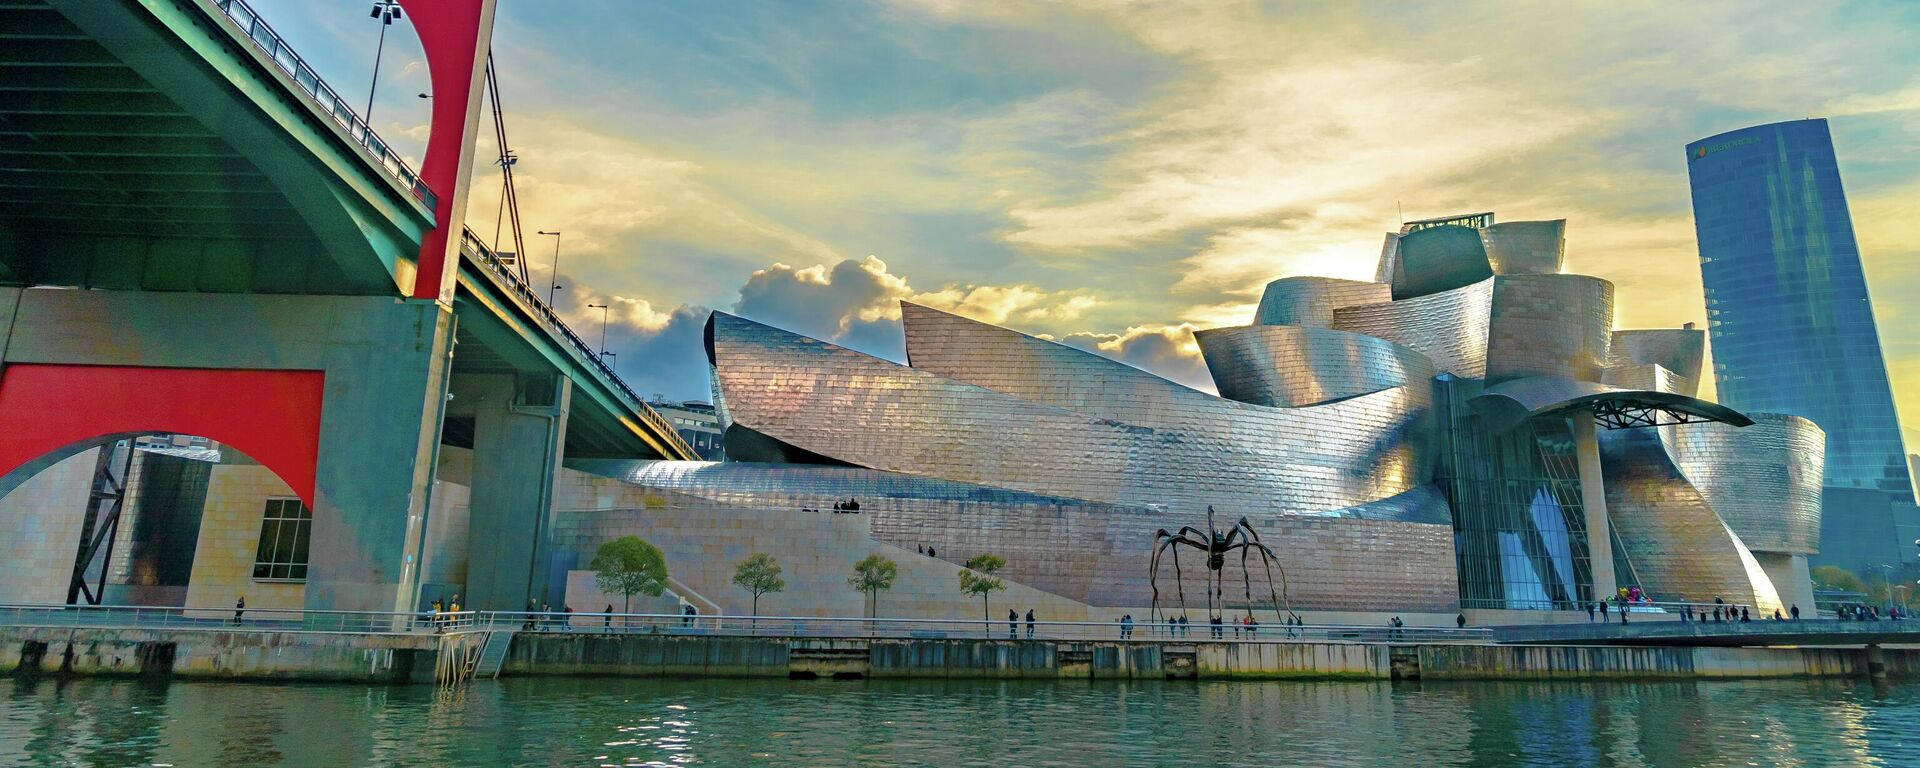 Museo Guggenheim en Bilbao visto desde el río - Sputnik Mundo, 1920, 12.05.2021